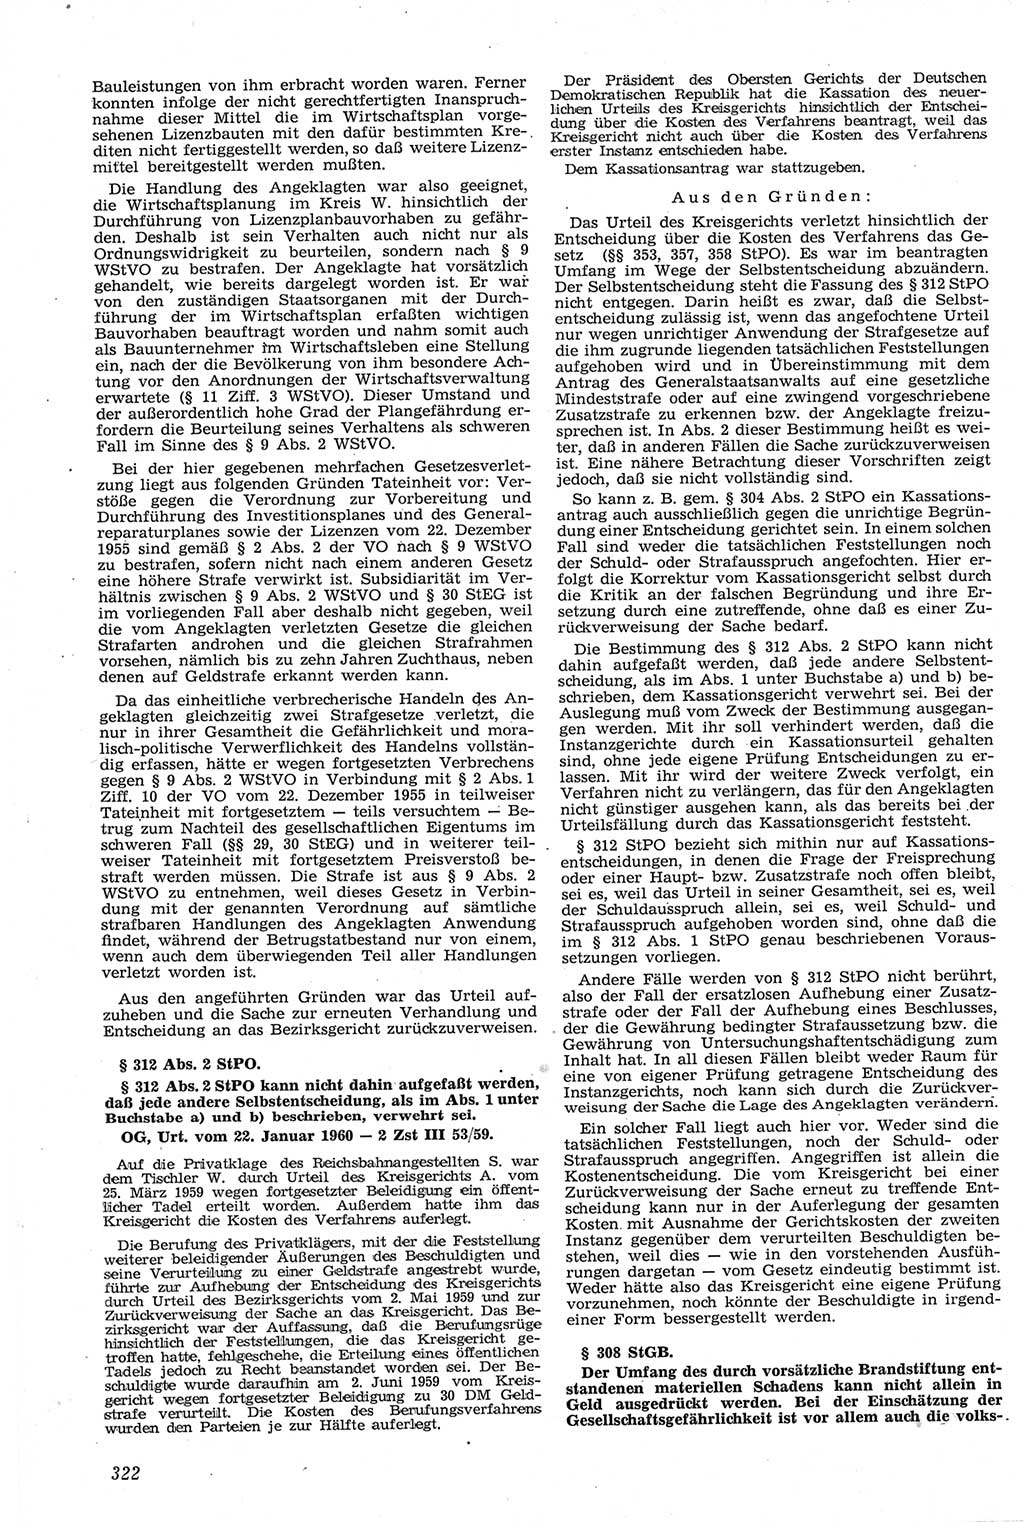 Neue Justiz (NJ), Zeitschrift für Recht und Rechtswissenschaft [Deutsche Demokratische Republik (DDR)], 14. Jahrgang 1960, Seite 322 (NJ DDR 1960, S. 322)